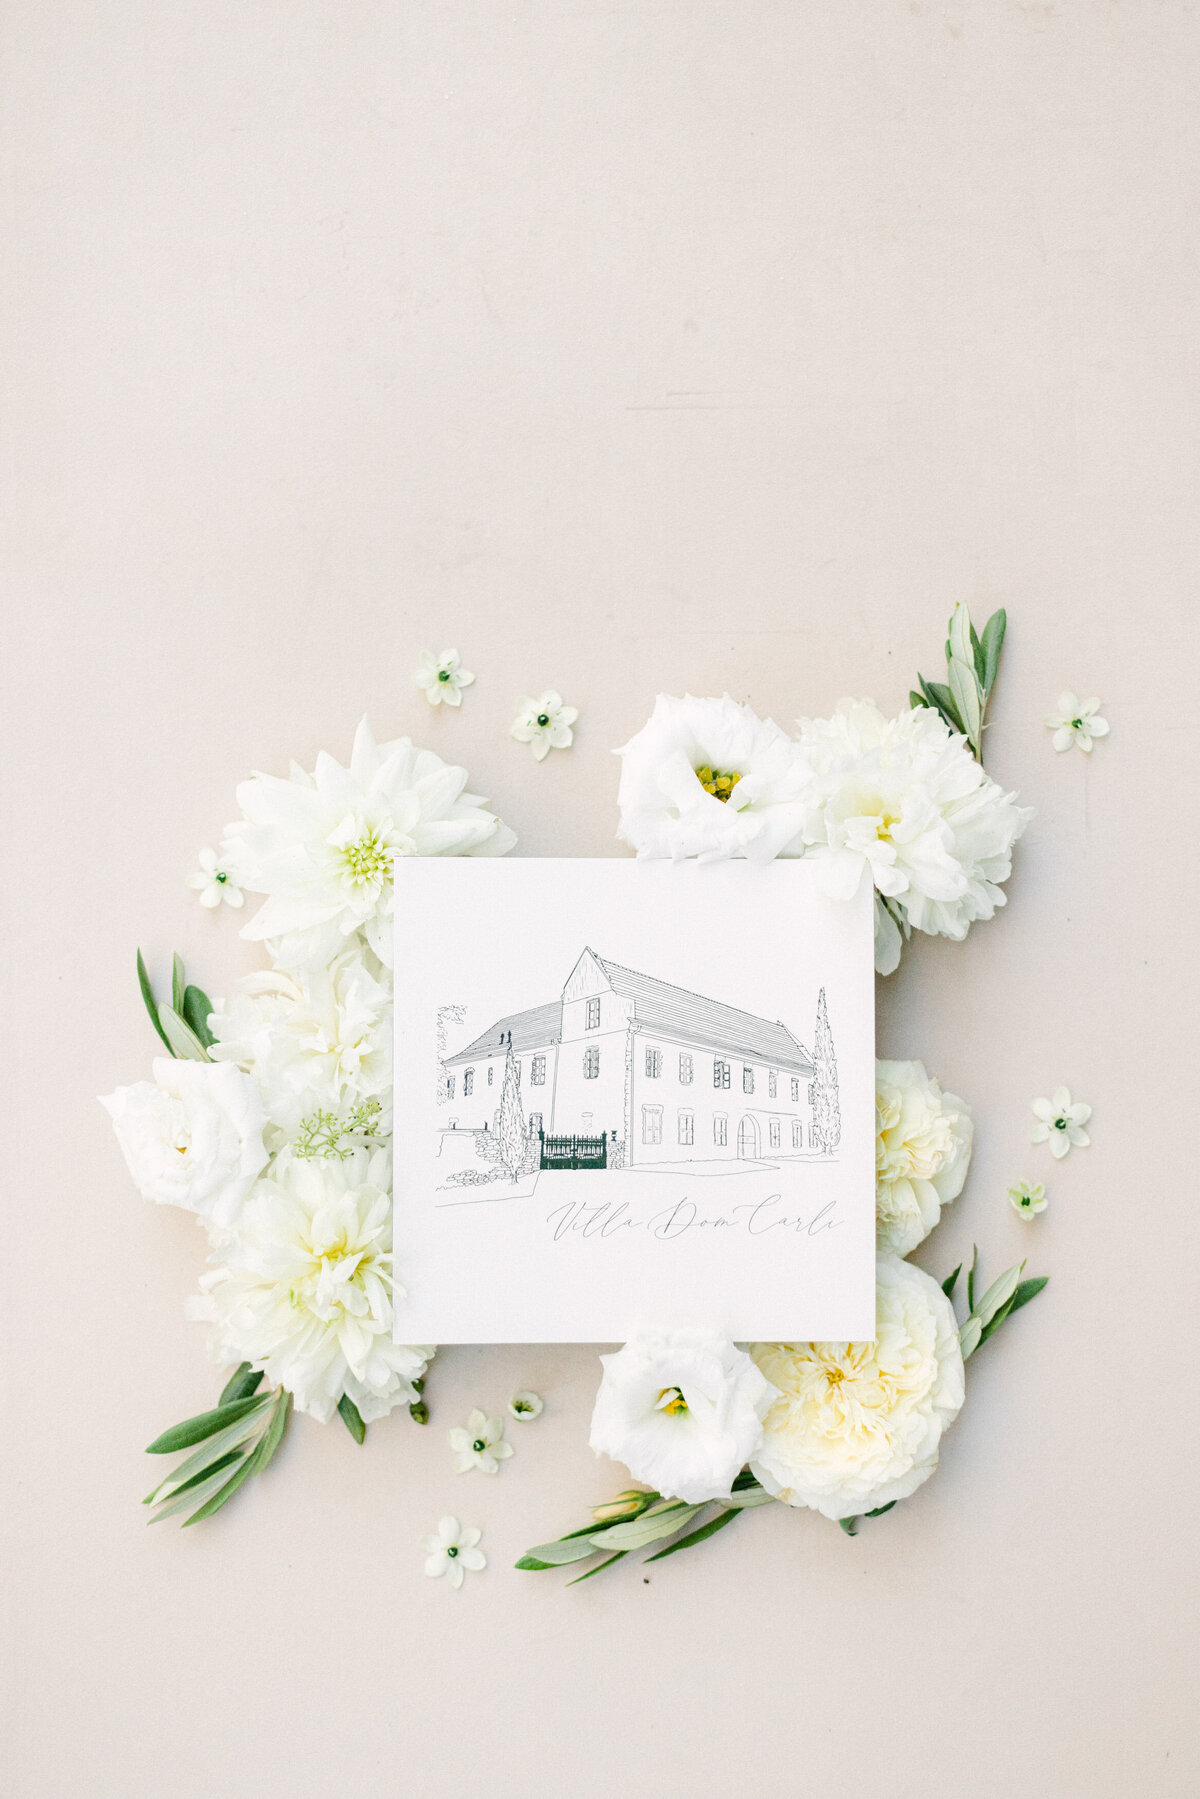 Svatební tiskoviny Villa Dom Carli inspirace